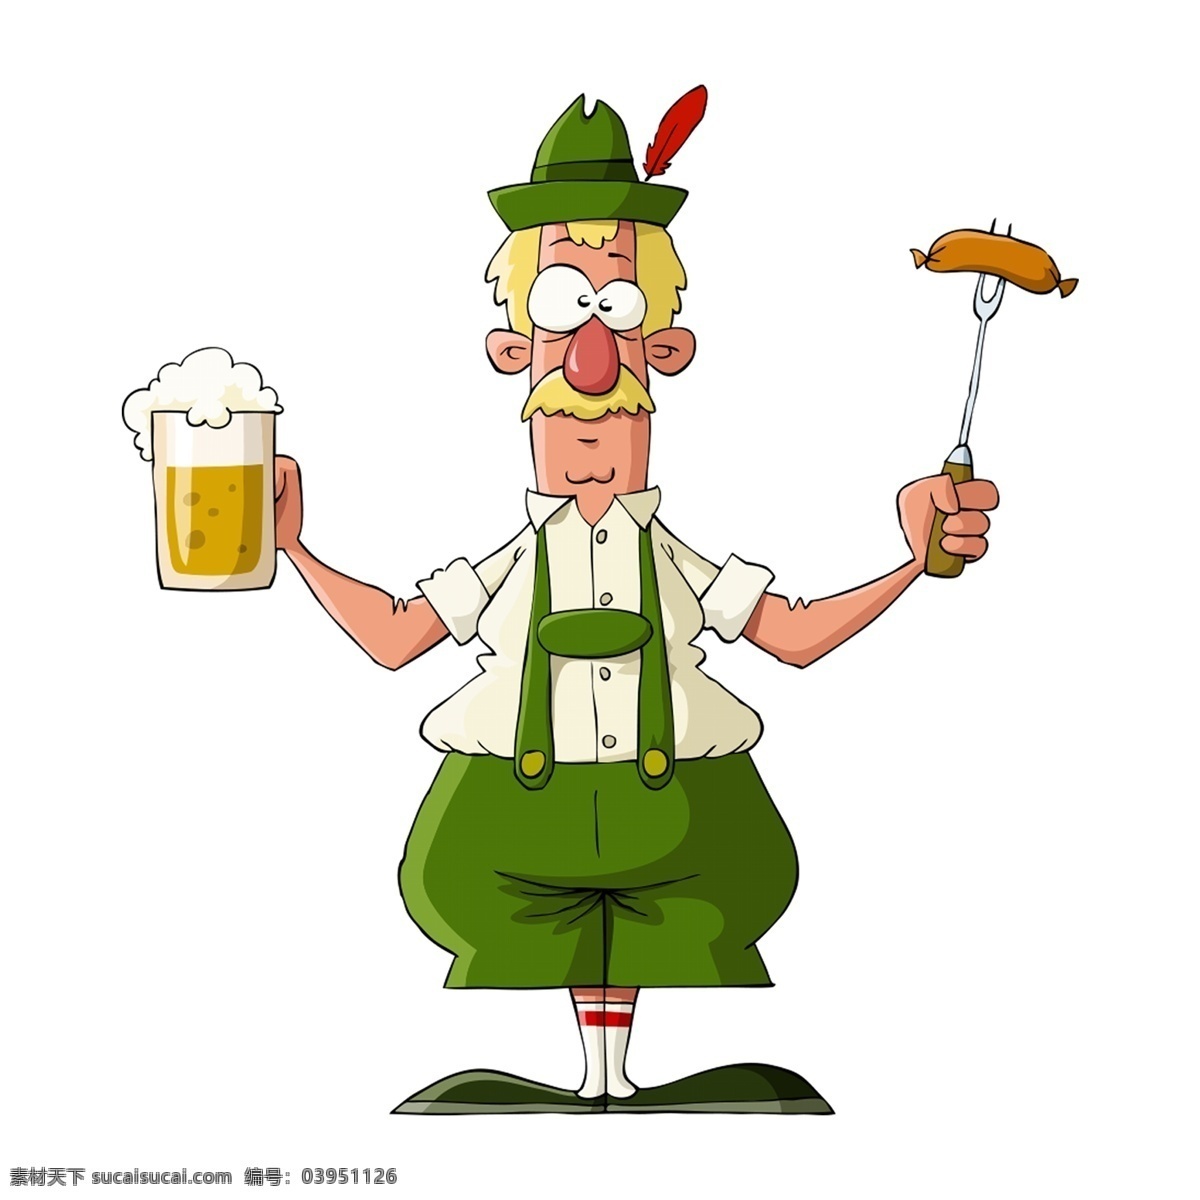 清新 创意 卡通 喝酒 老人 元素 人物 啤酒 人物元素 可爱风